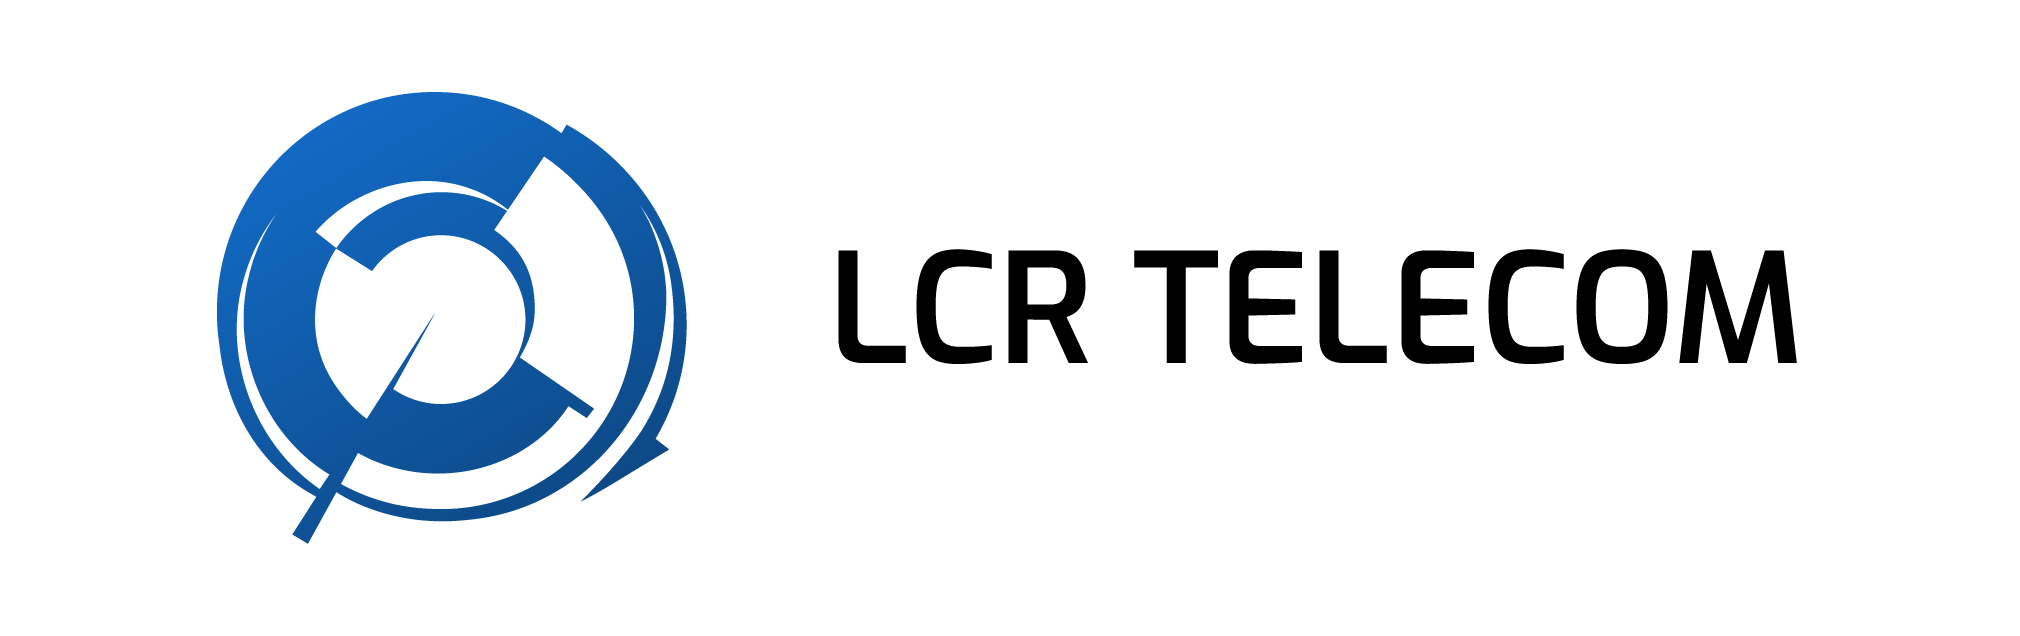 Logo LCR Telecom